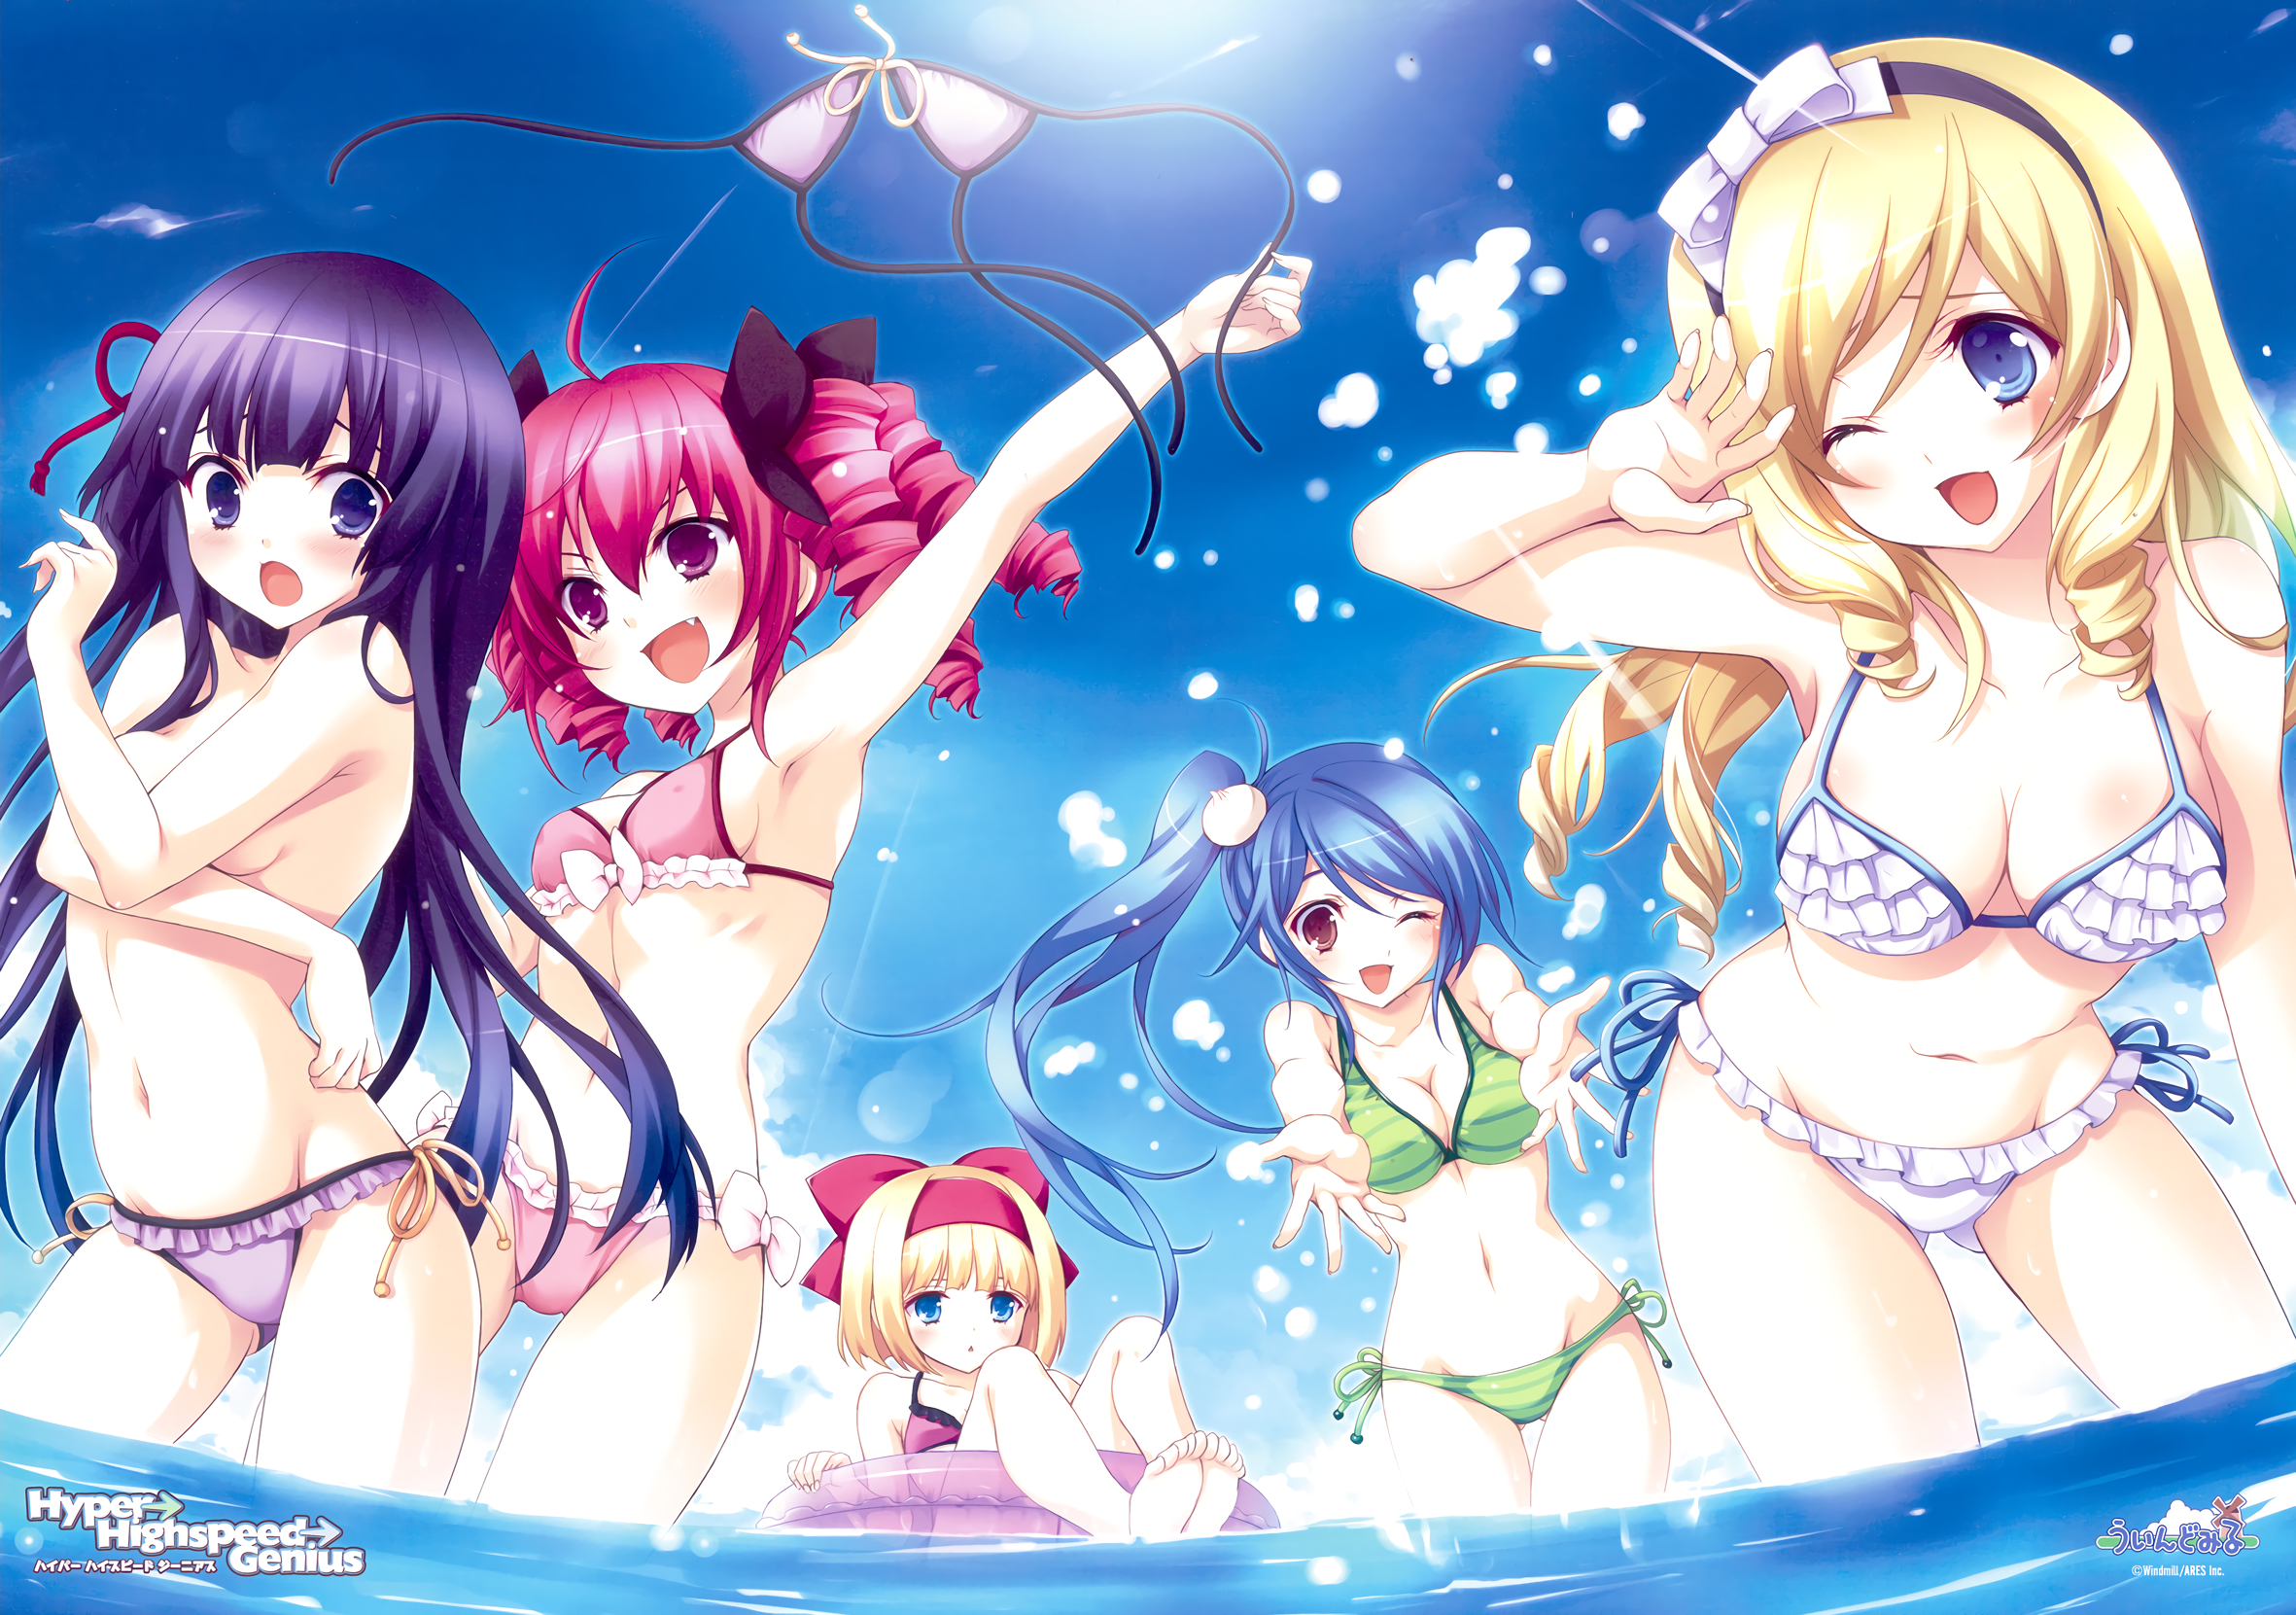 Anime 2362x1661 Hyper Highspeed Genius bikini cleavage topless anime girls Yukiwo